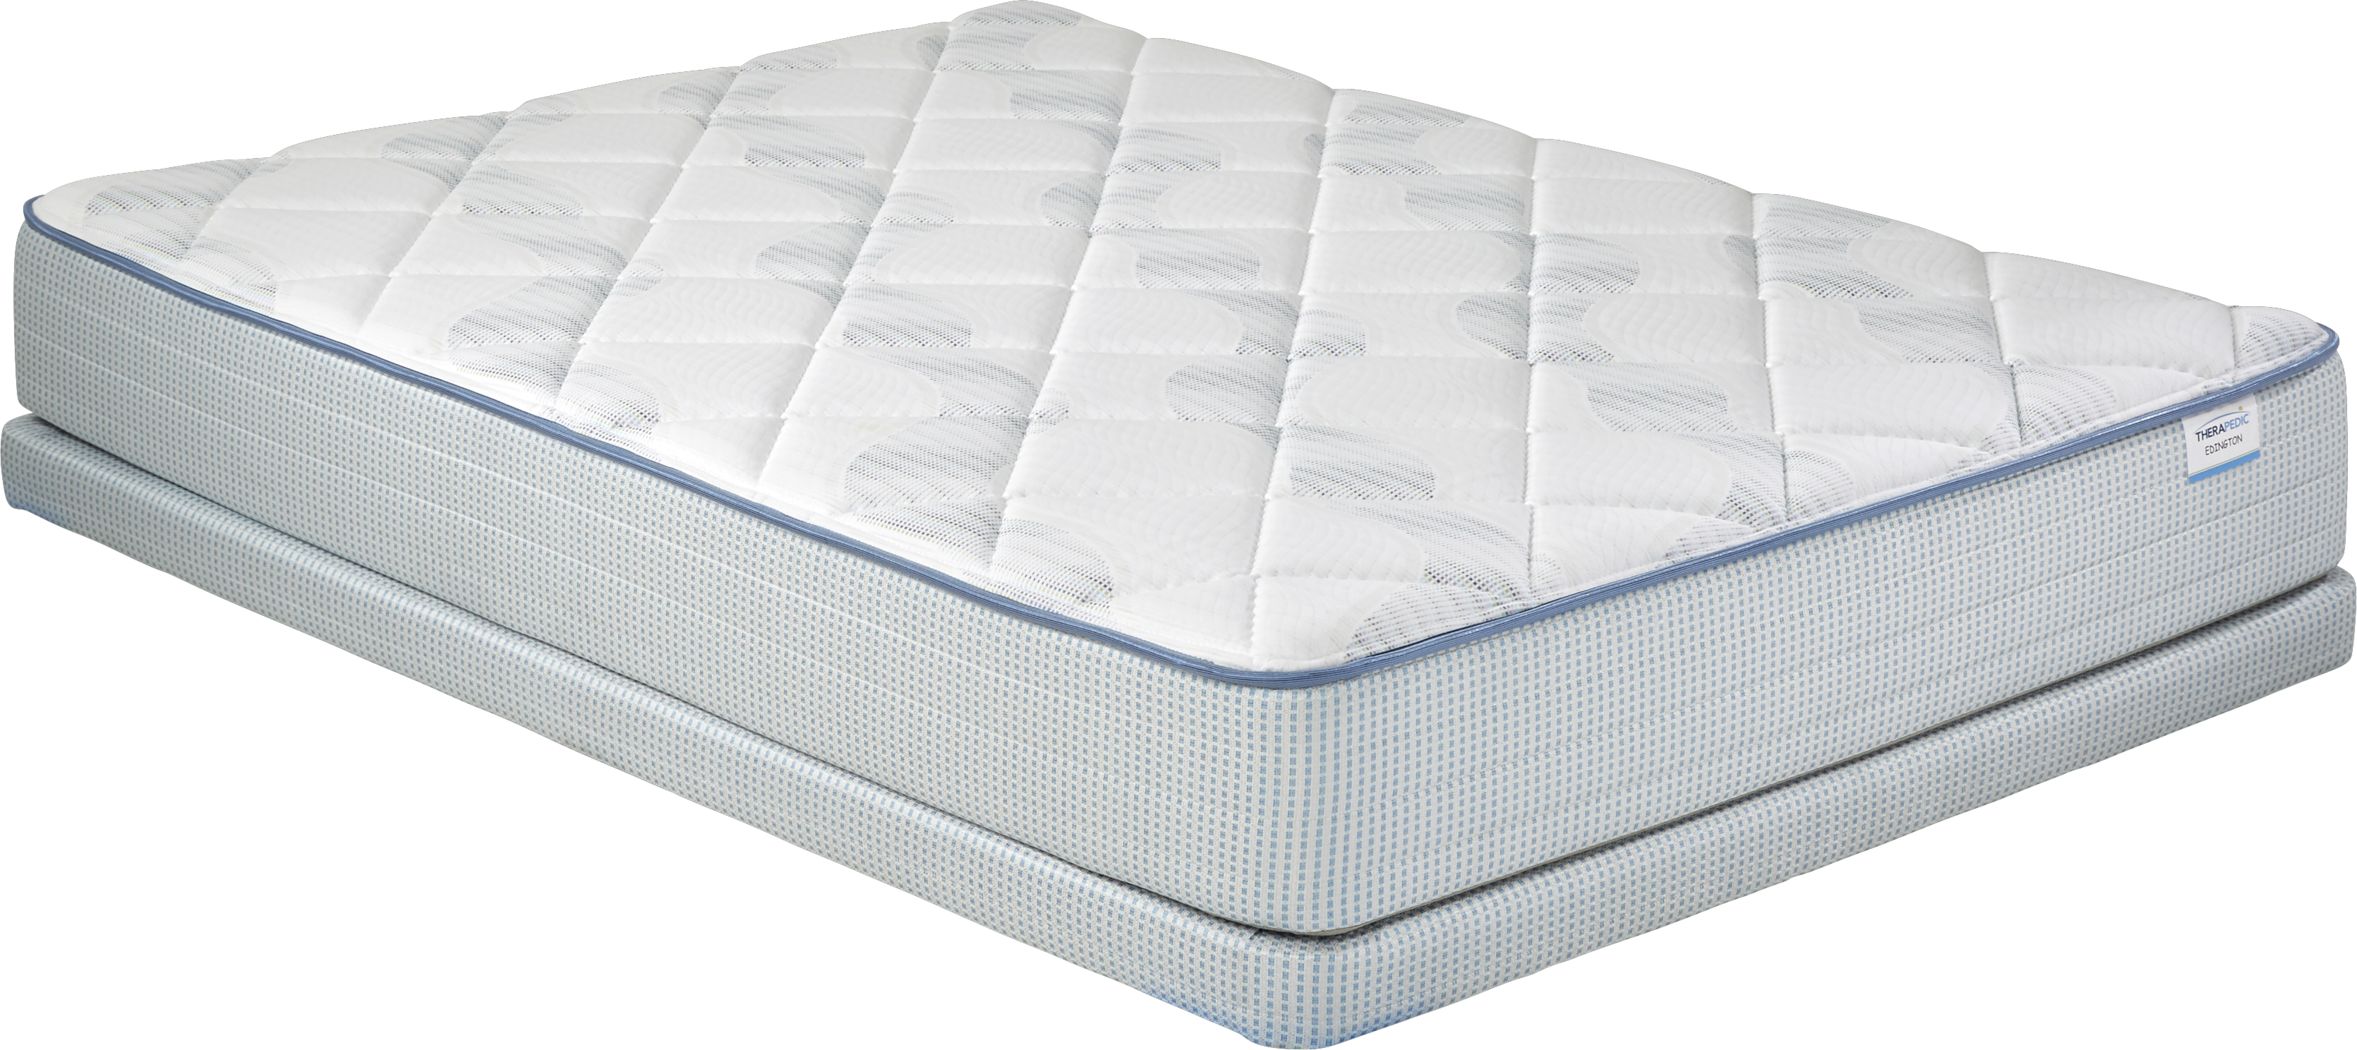 low profile mattress pads